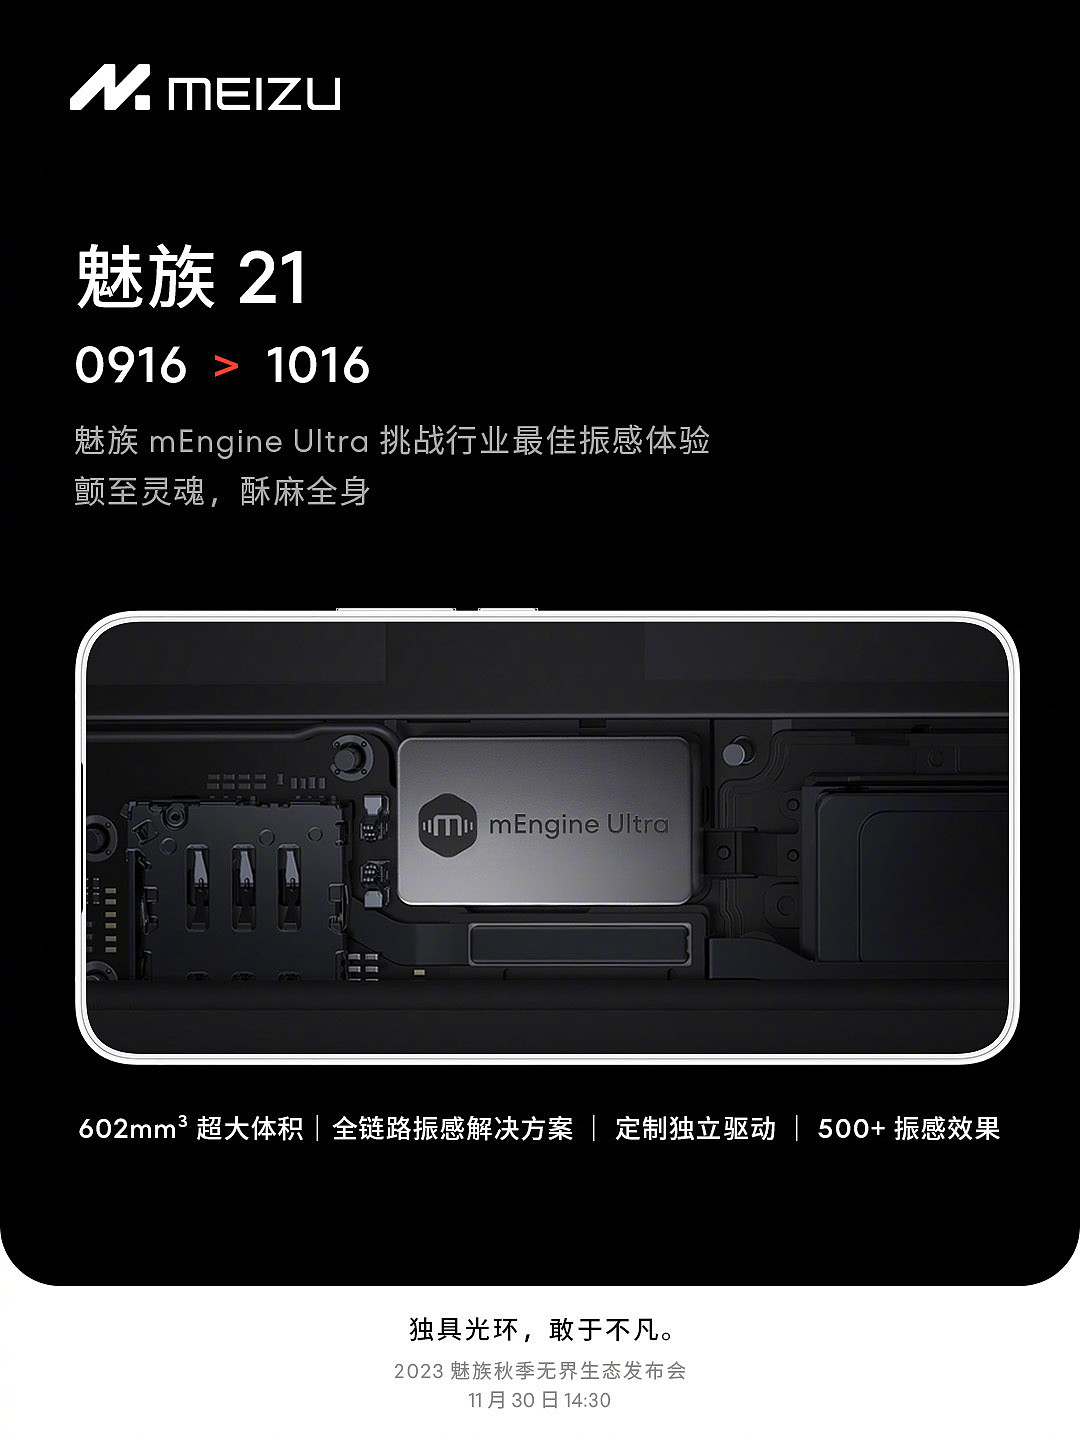 魅族 21 手机预热：内置 4800mAh 电池，称“配合 OneMind 10.5 + 三星 OLED 屏 > 5100mAh” - 3